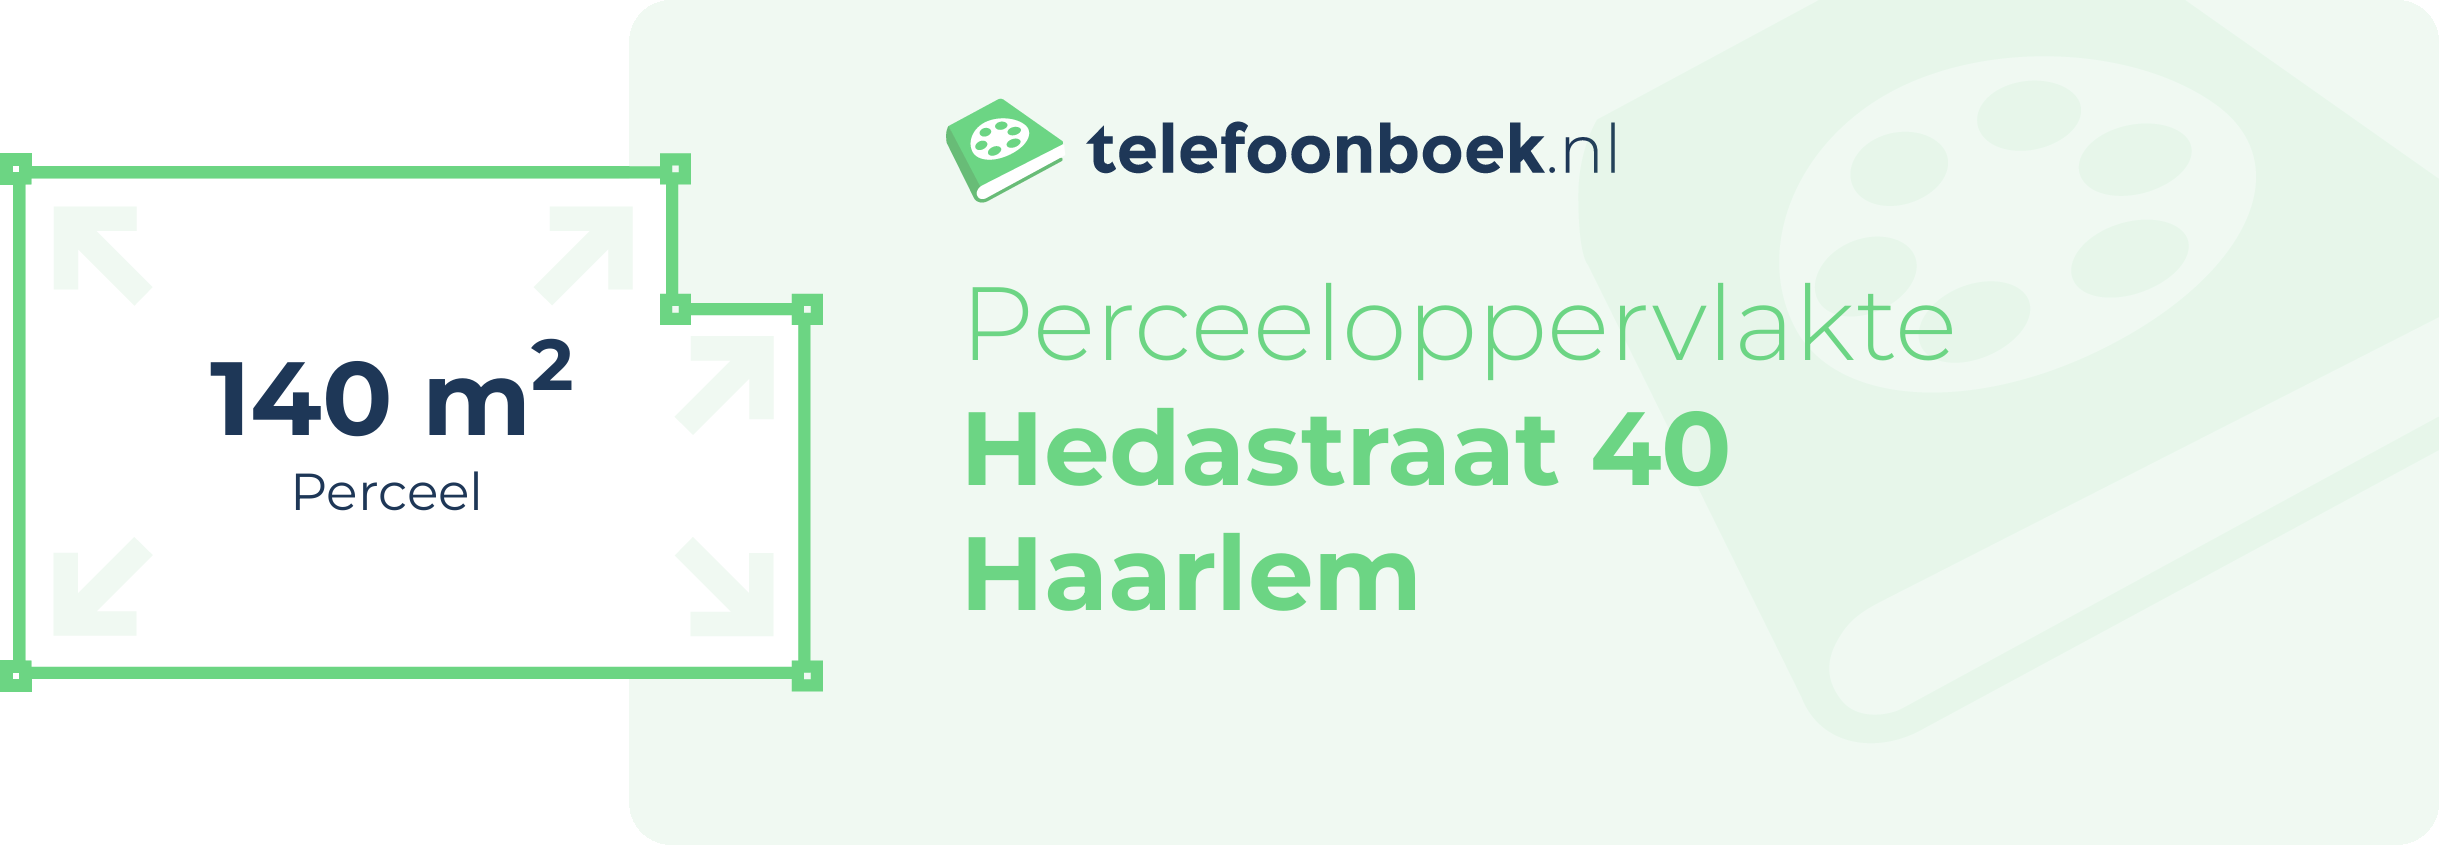 Perceeloppervlakte Hedastraat 40 Haarlem